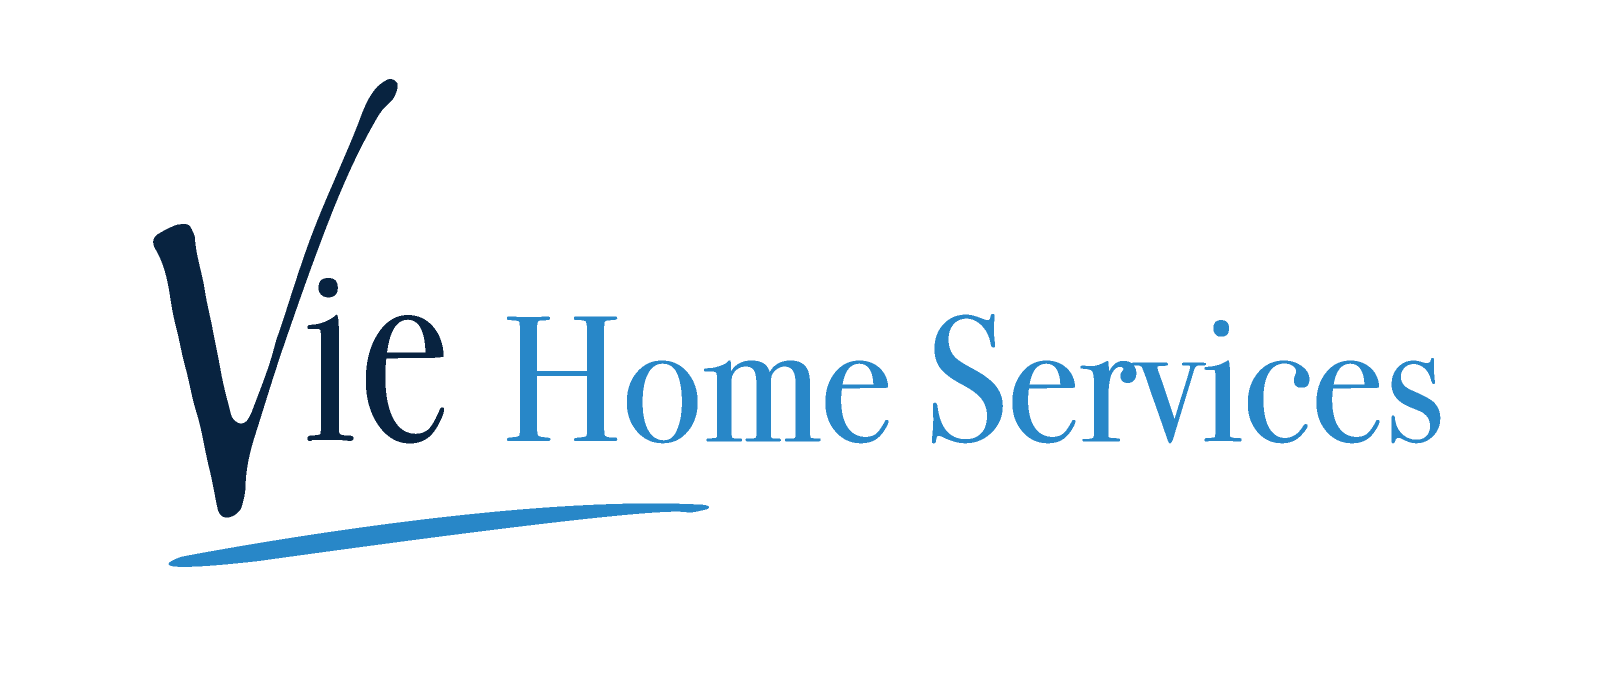 Vie Home Services